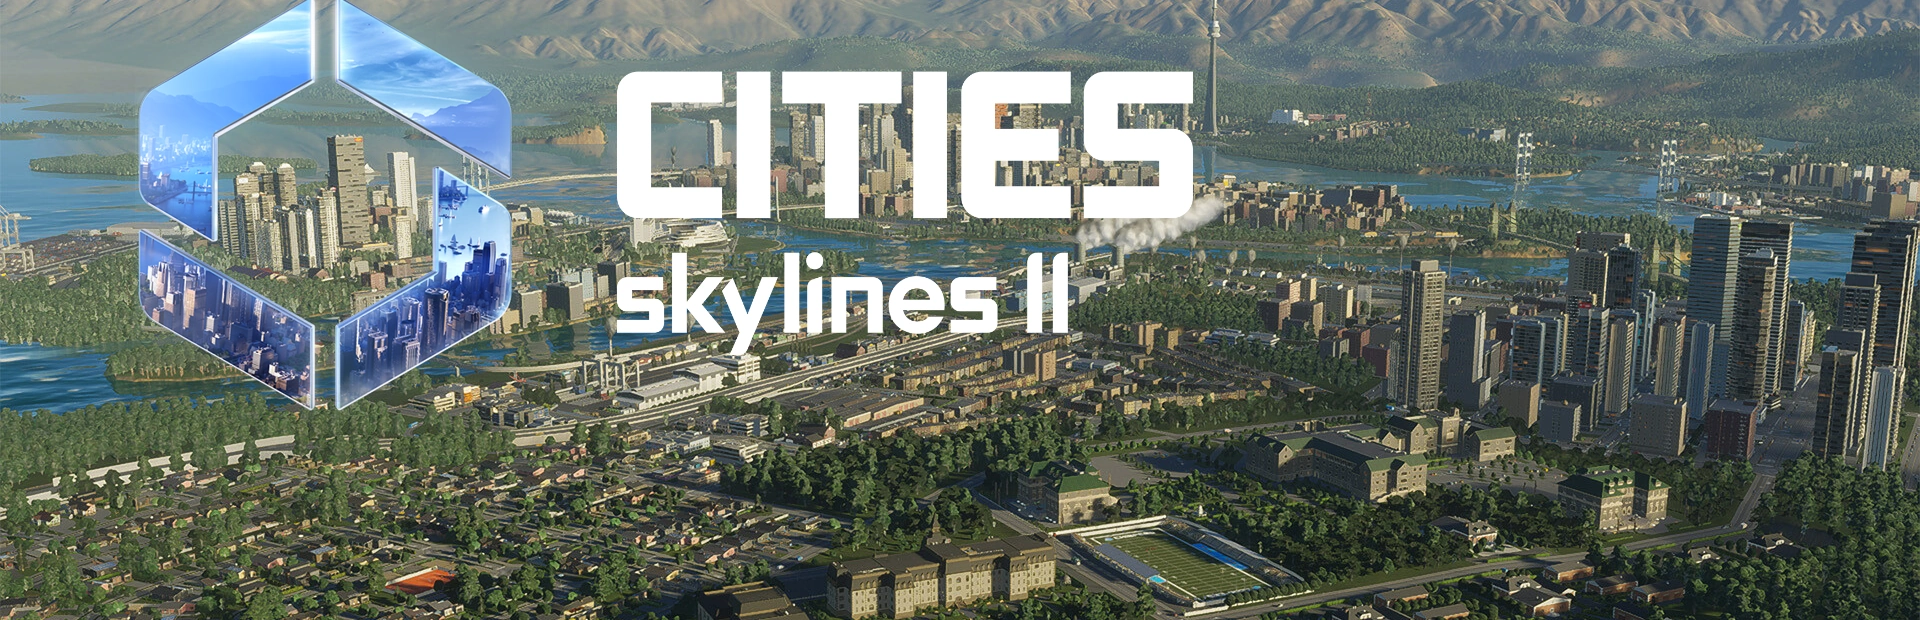 دانلود بازی Cities: Skylines II برای کامپیوتر | گیمباتو